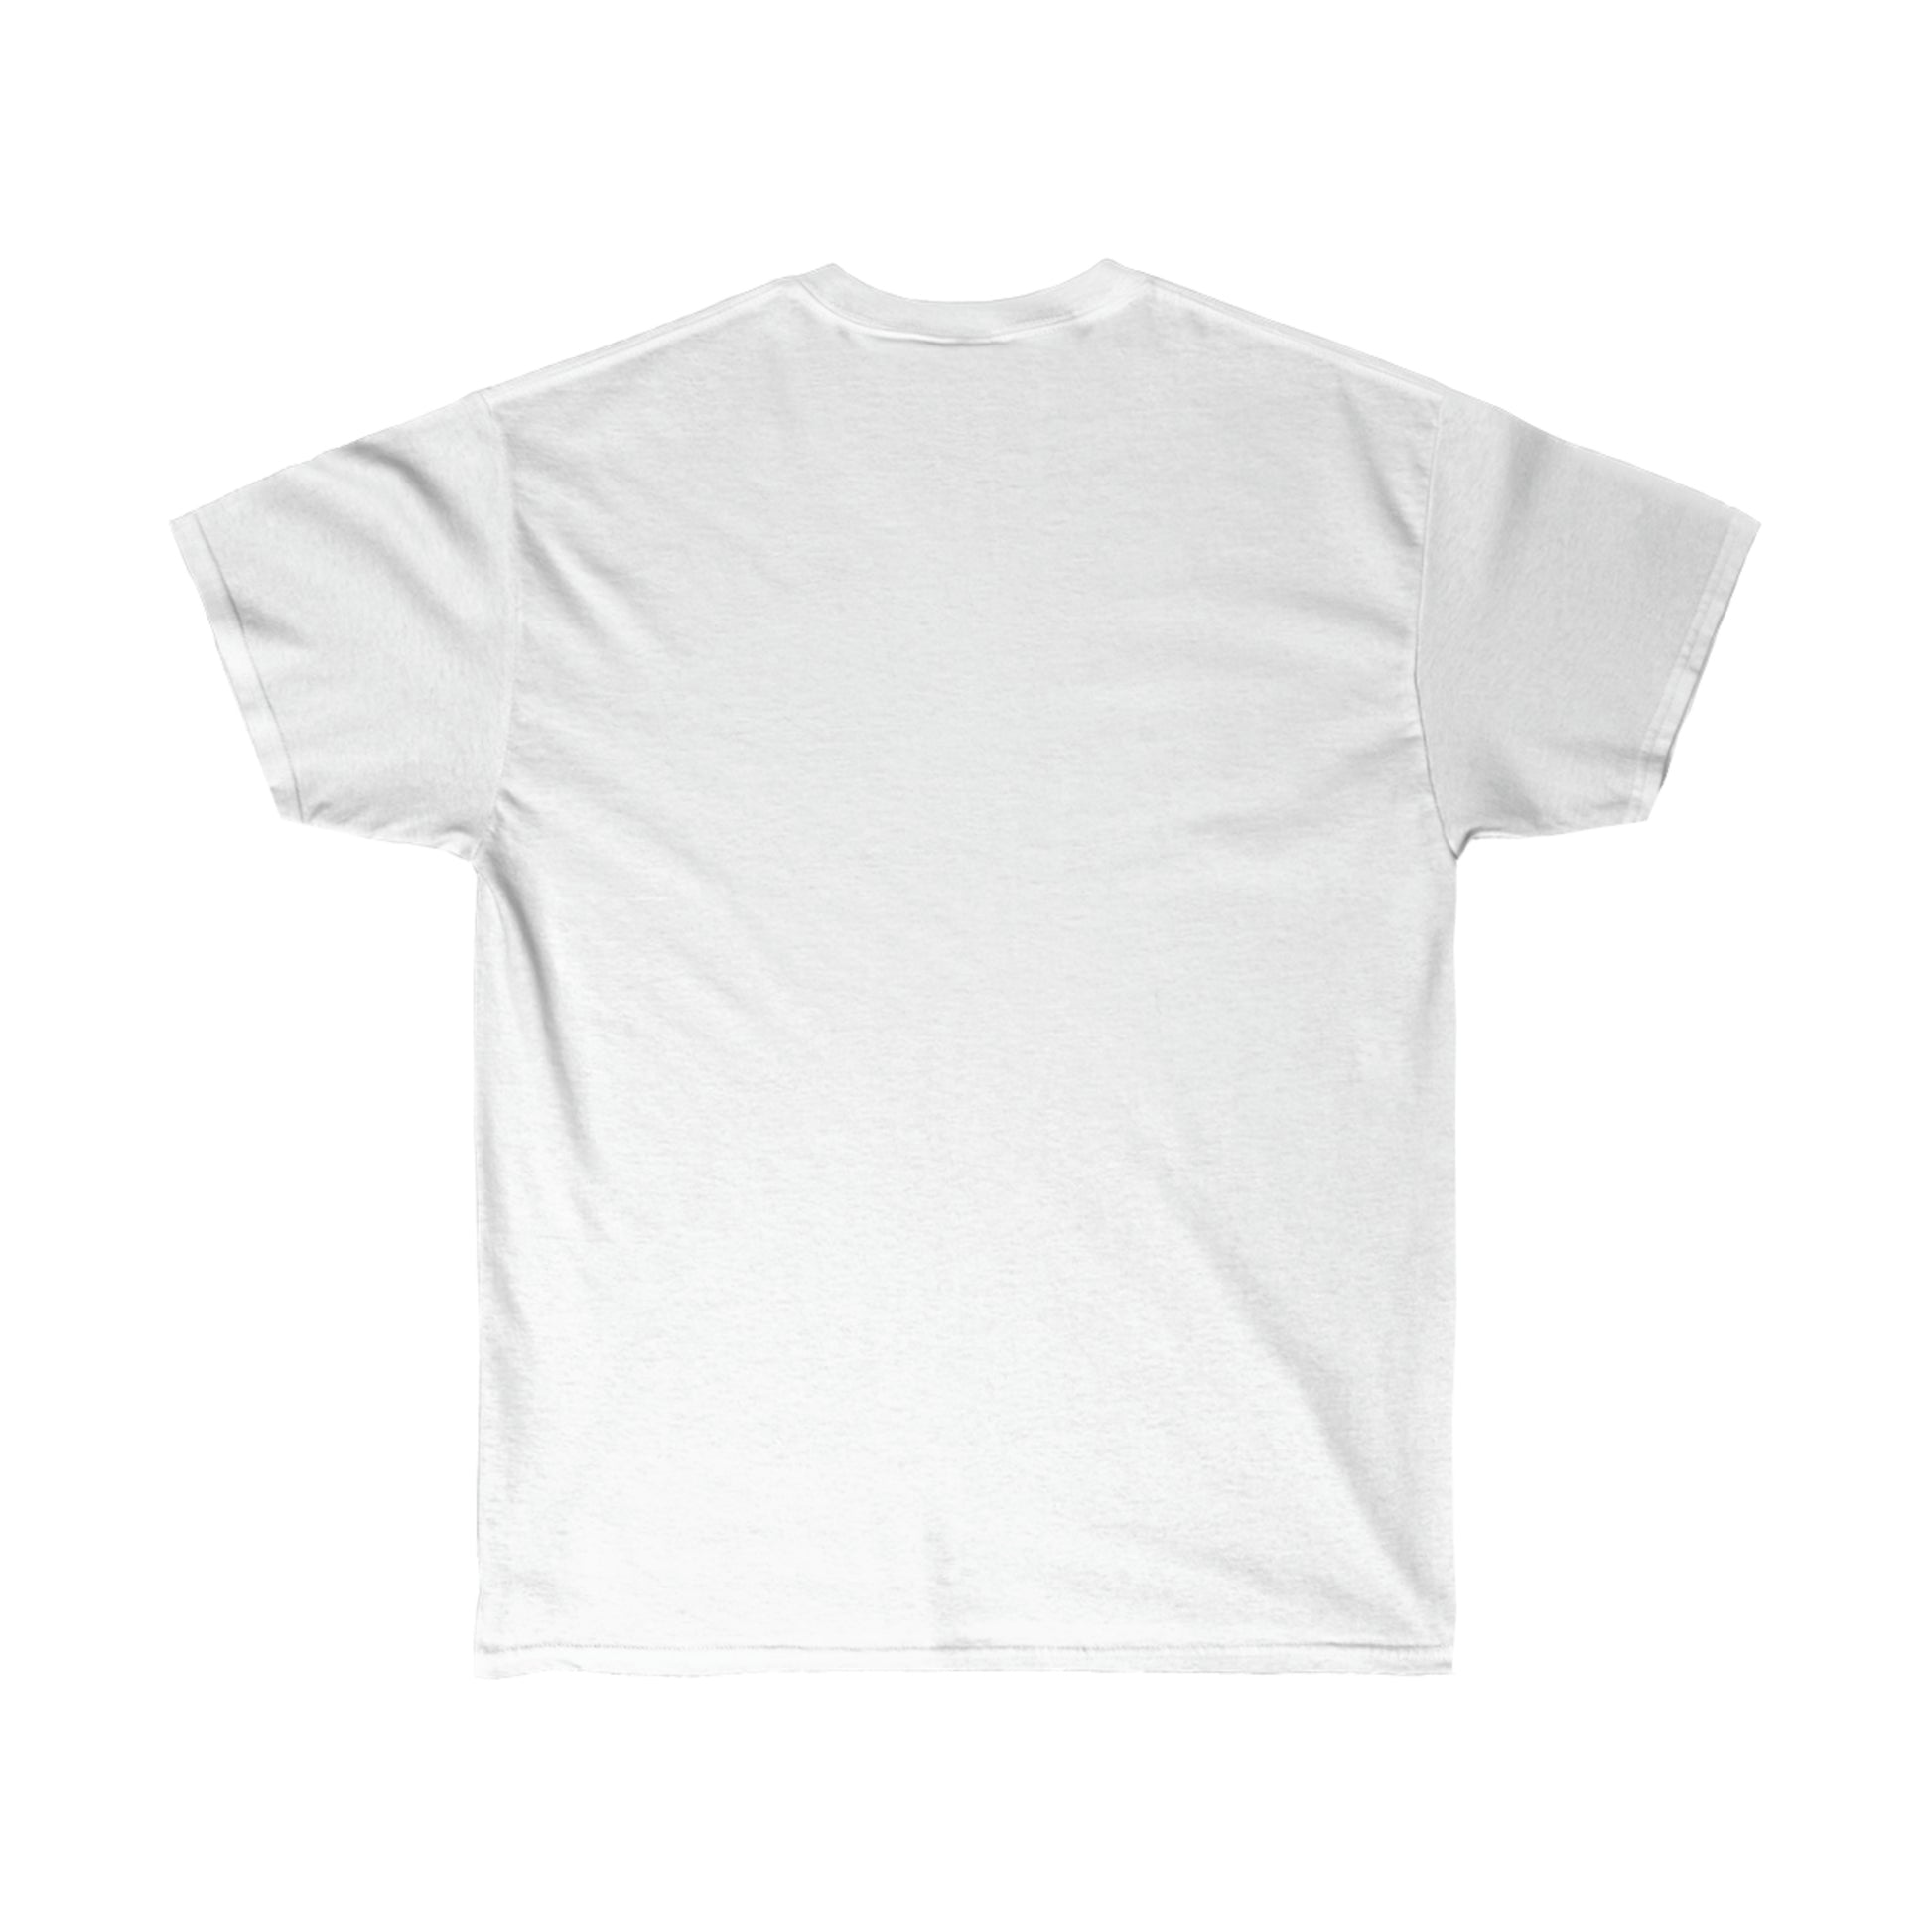 15 Basic White T-Shirts You'll Wear Again & Again